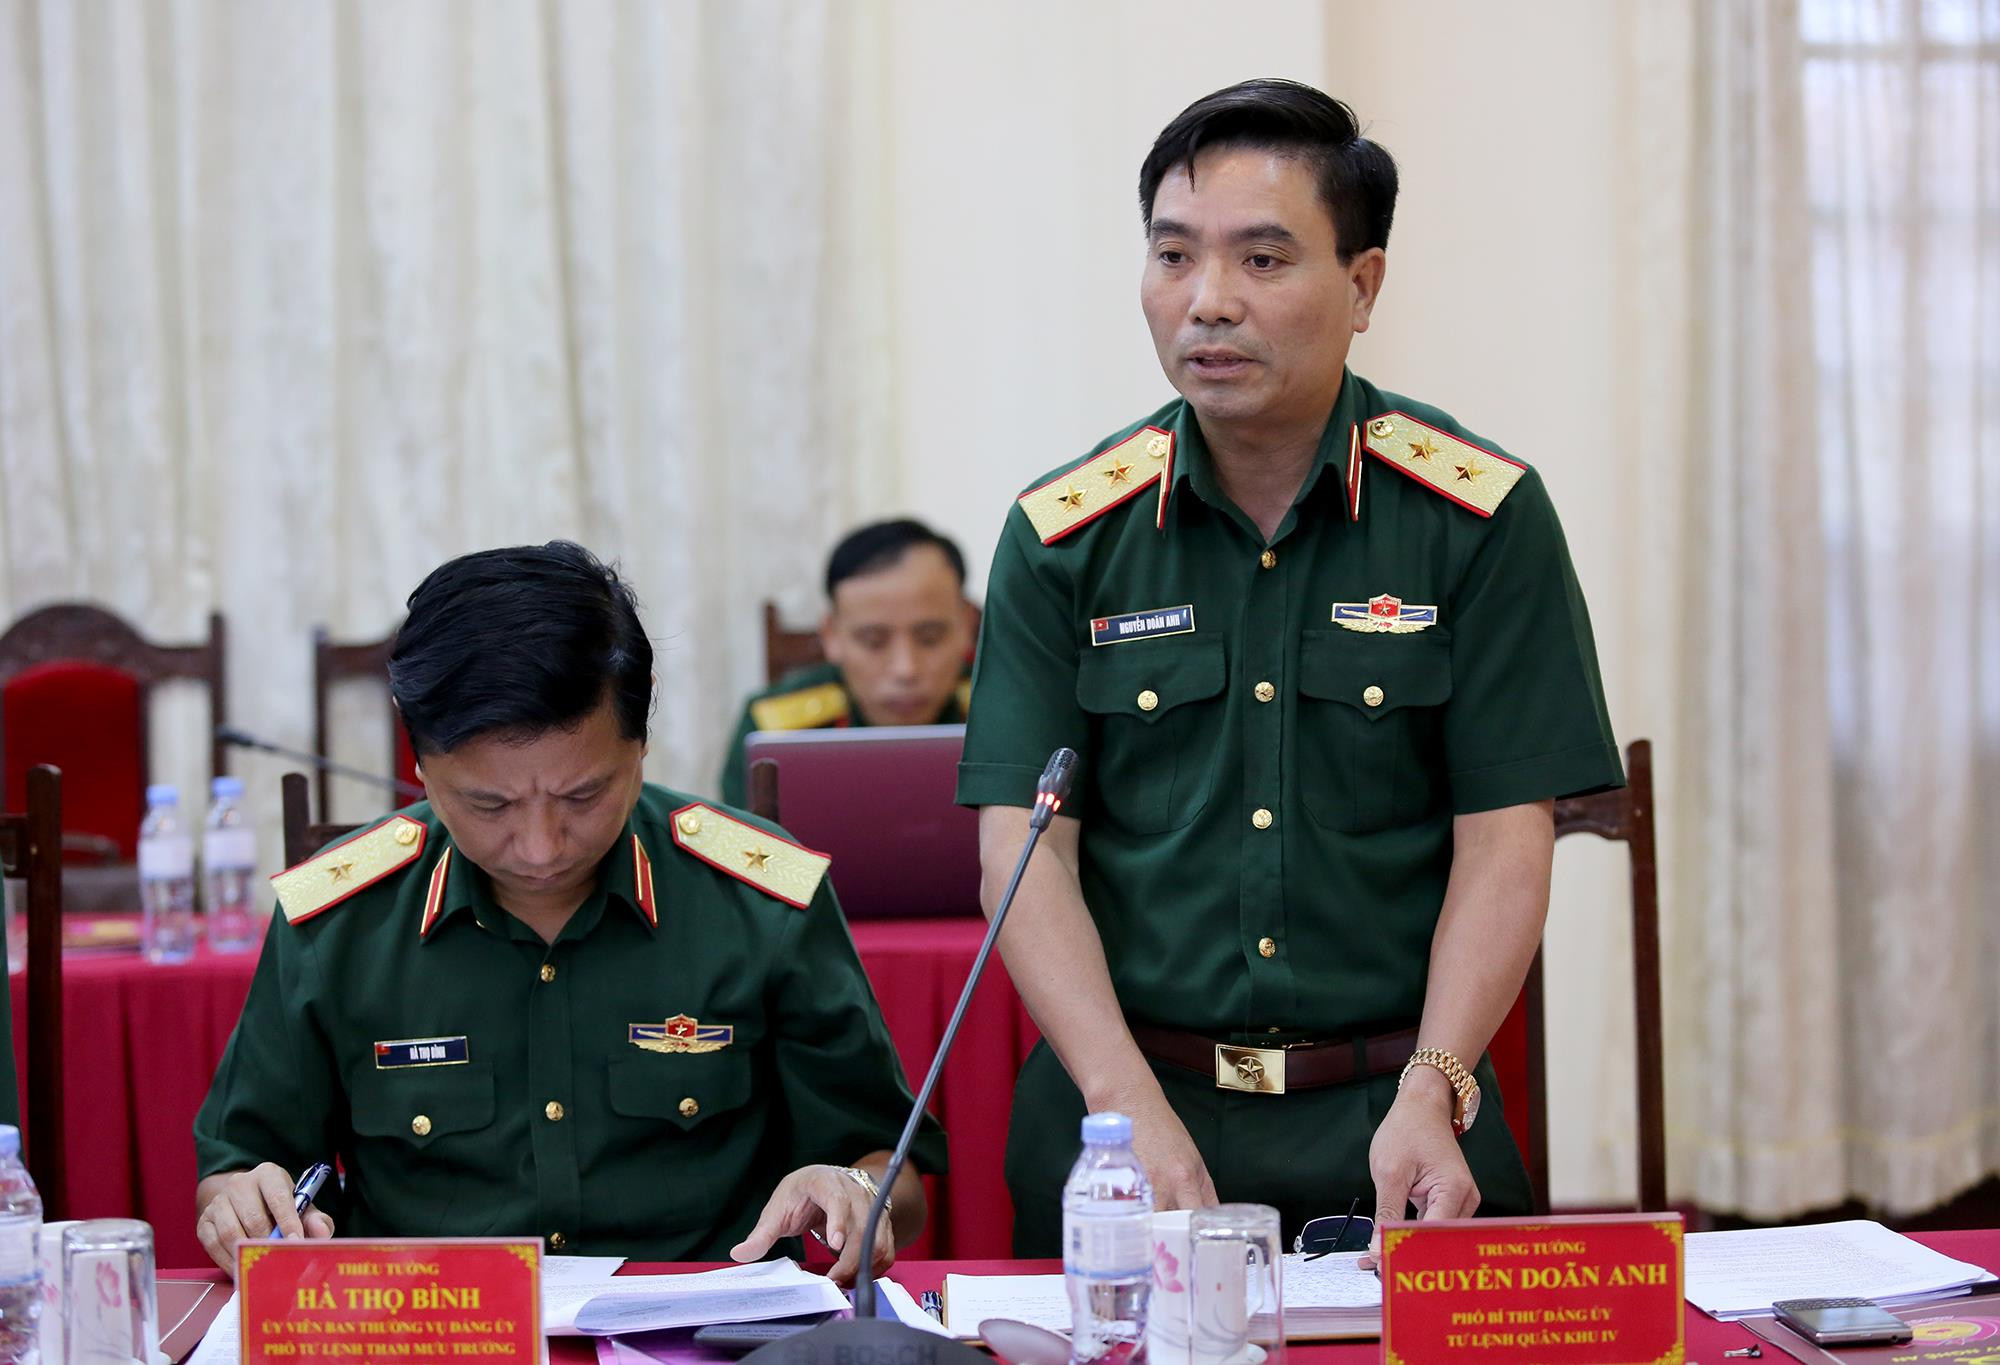 Trung tướng Nguyễn Doãn Anh, Tư lệnh Quân khu 4 đánh giá về công tác phối hợp giữa Quân khu 4 và tỉnh Nghệ An. Ảnh: Đức Anh